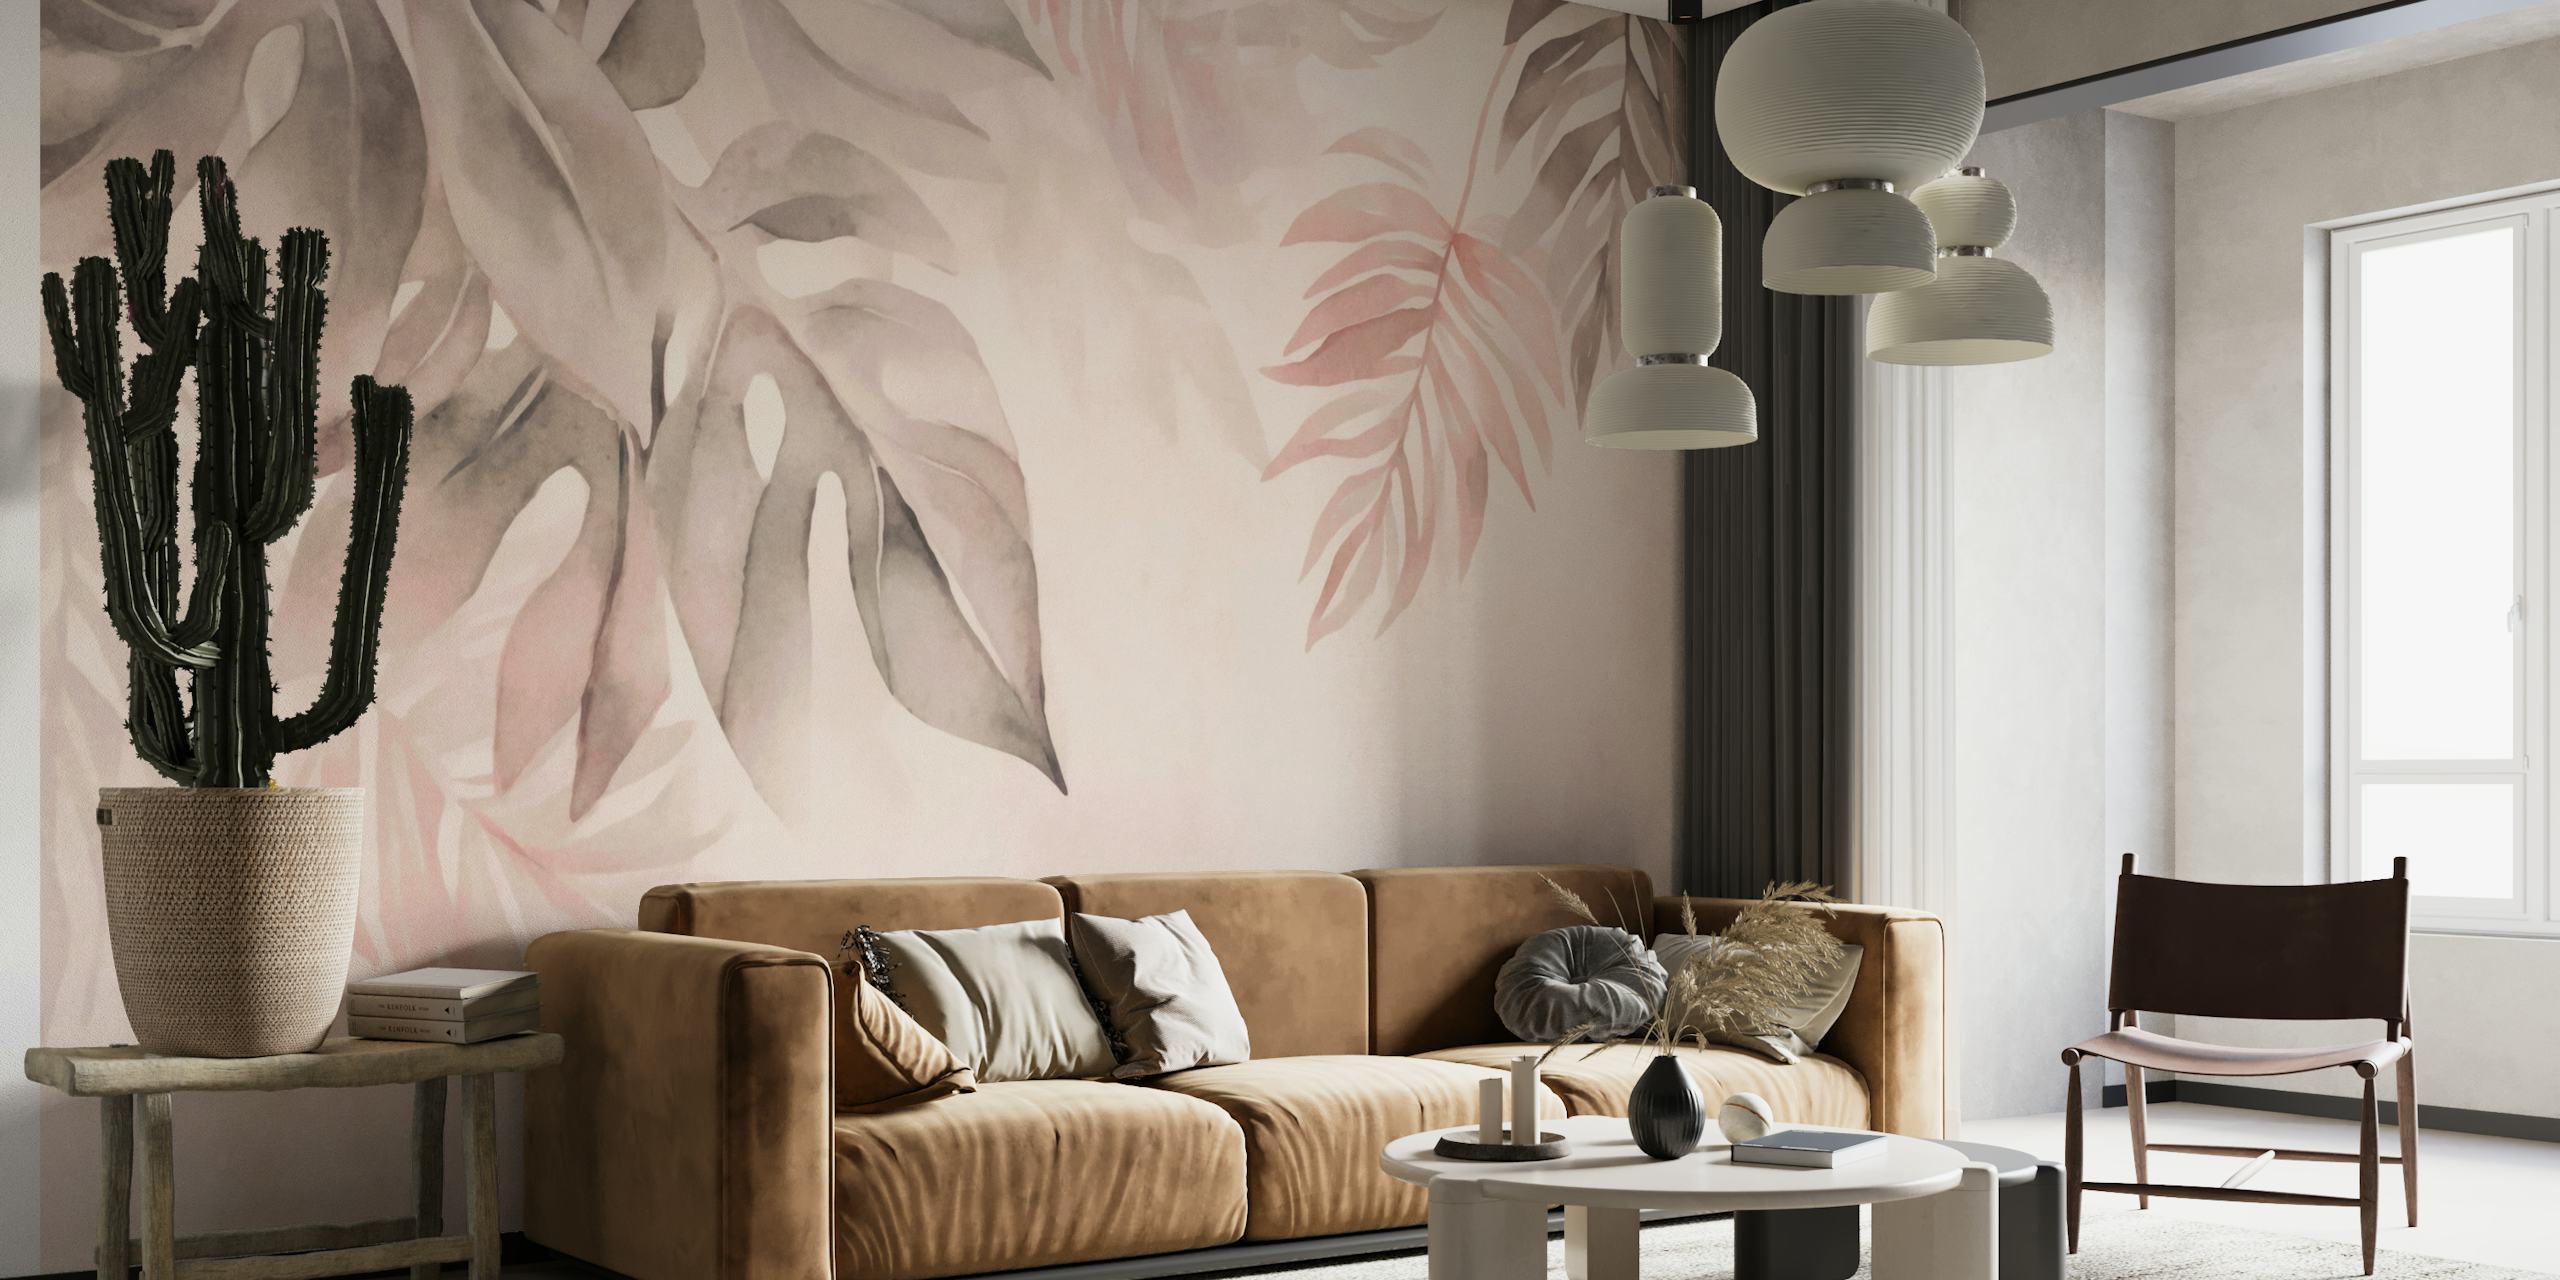 Decorazione murale con foglie tropicali sussurri blush delicati con tenui toni pastello e fogliame delicato